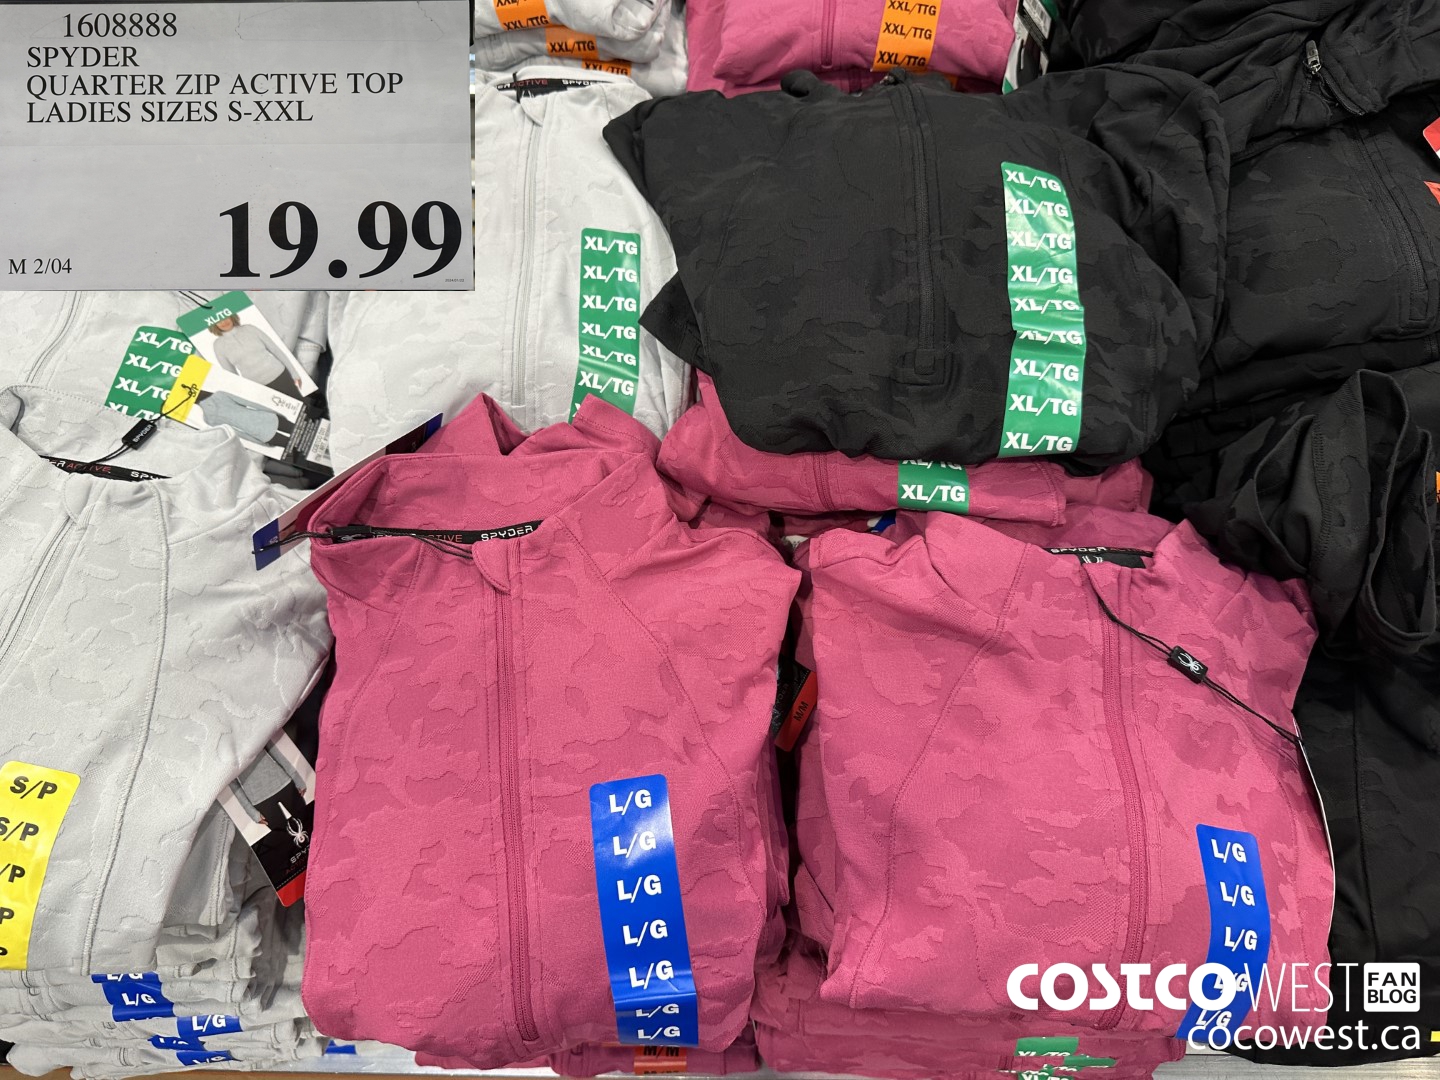 Costco Puma Ladies' Sports Bra, 3pk $15.99